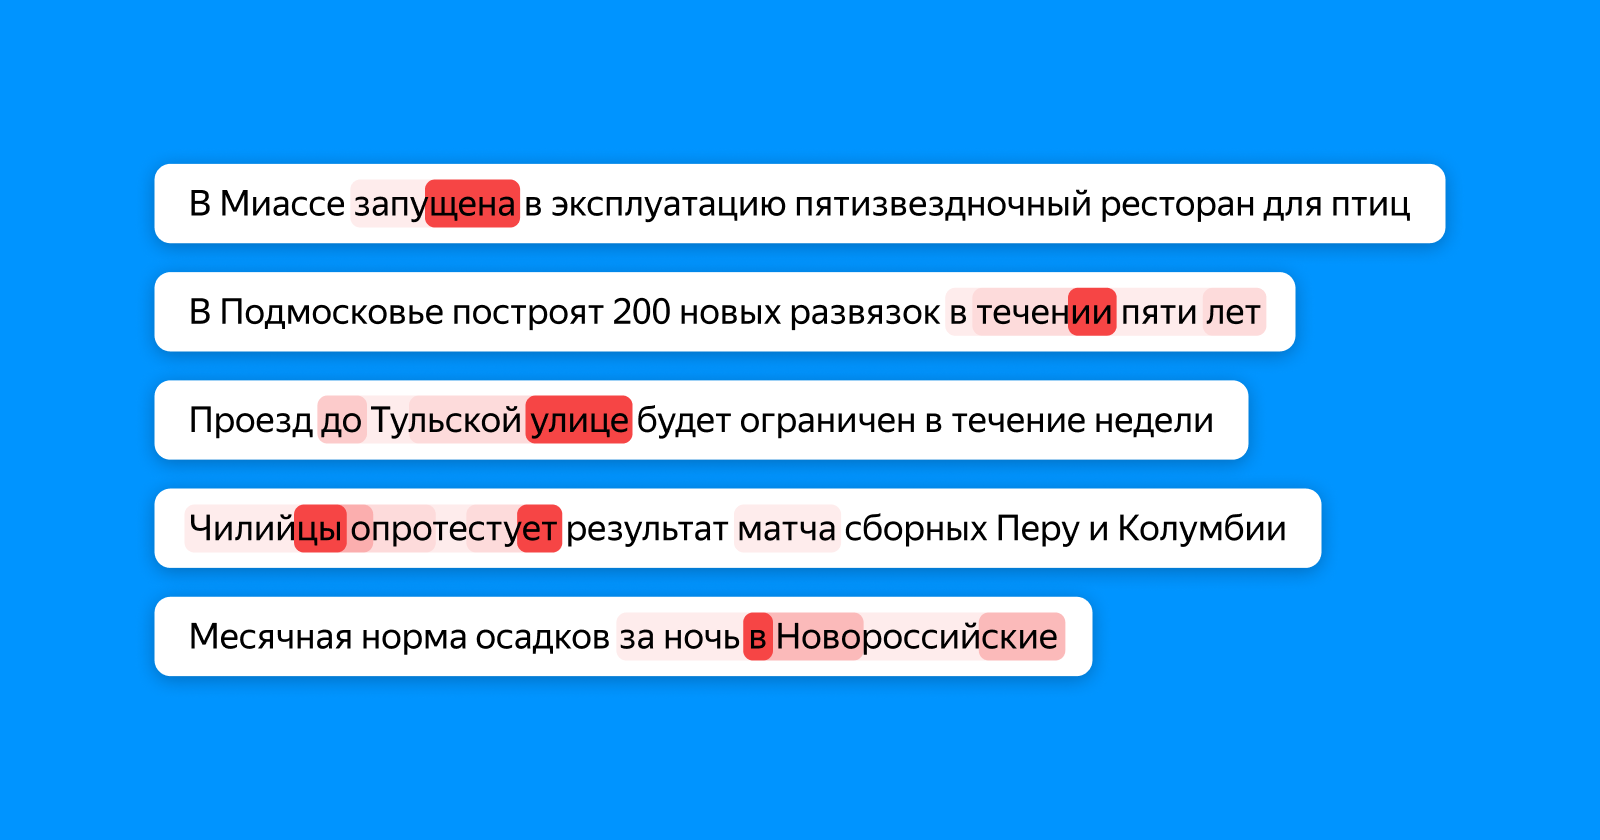 Как Яндекс научил искусственный интеллект находить ошибки в новостях - 2